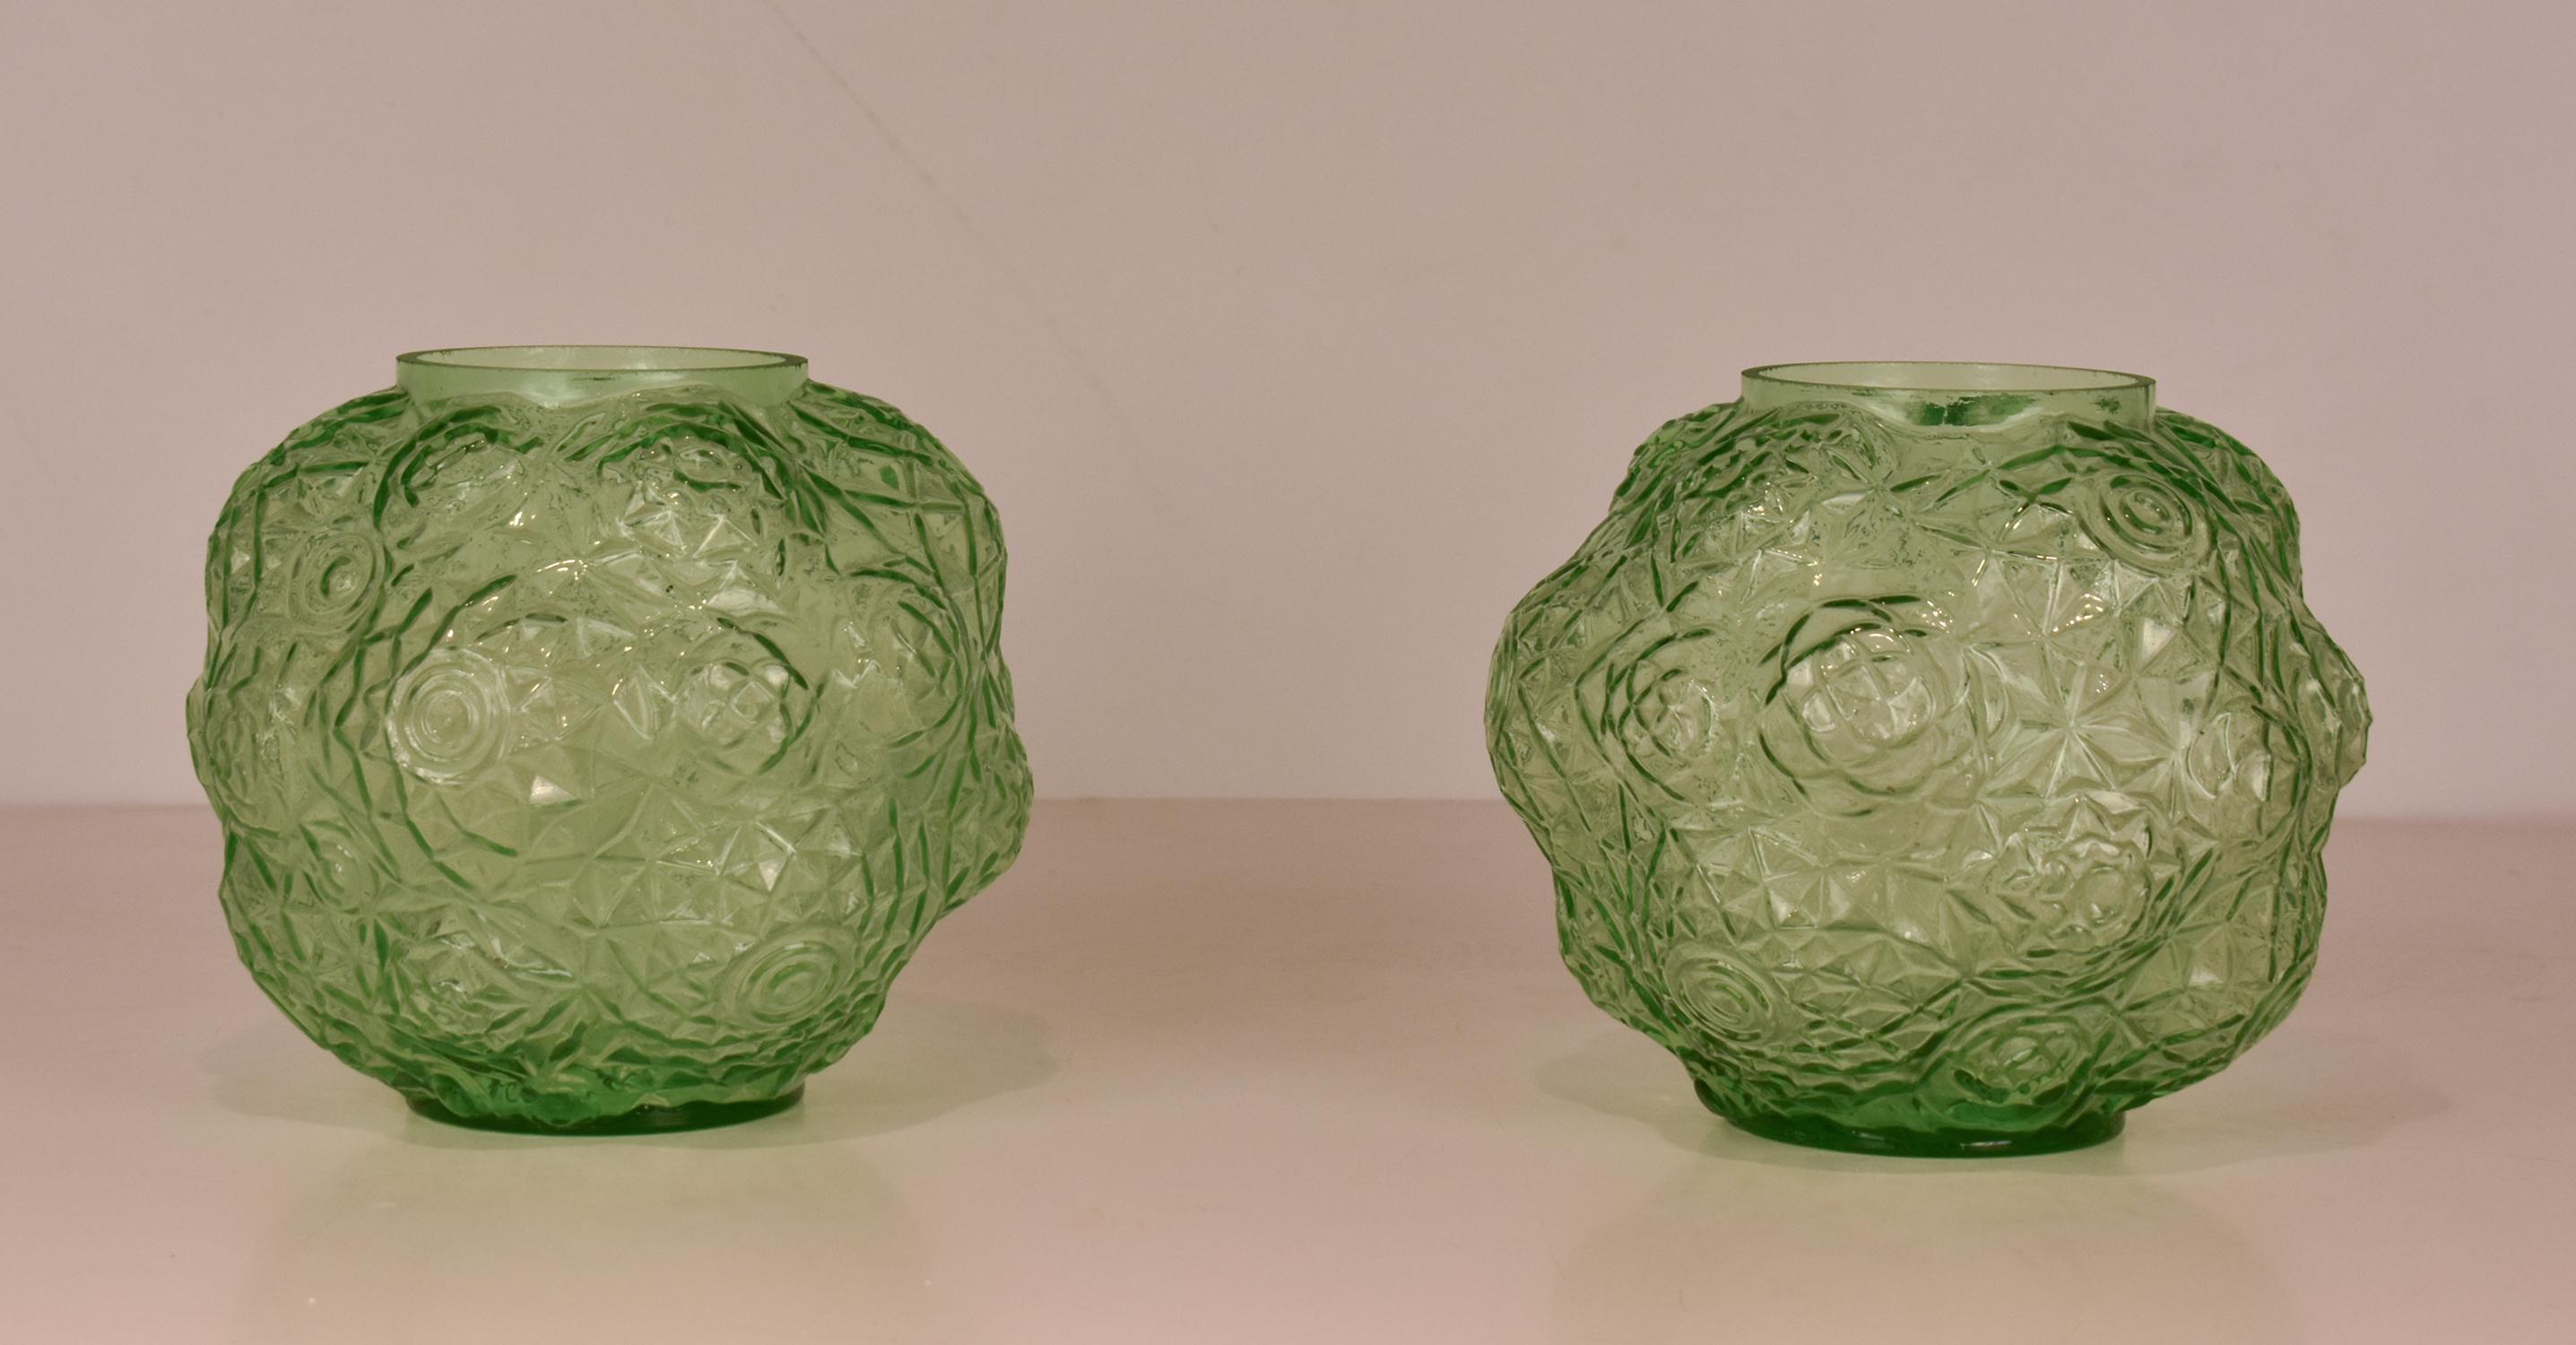 Paar Art-Déco-Vasen aus grünem Glas. 1930's.
Hergestellt aus grünem Glas mit geometrischen Motiven.